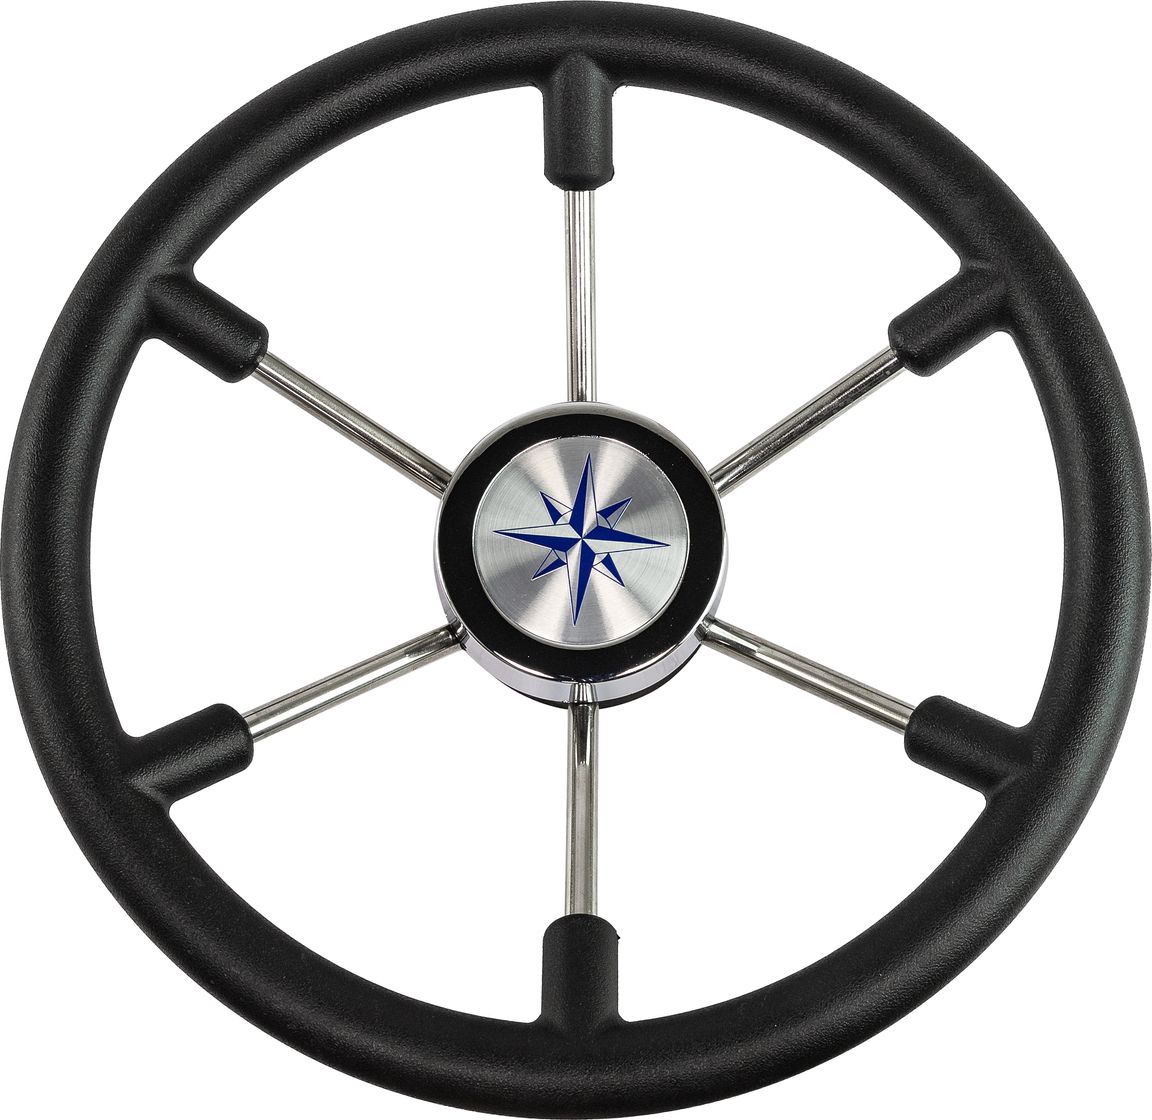 Рулевое колесо LEADER PLAST черный обод серебряные спицы д. 360 мм VN8360-01 рулевое колесо e chance обод и спицы черные д 330 мм d33 ec